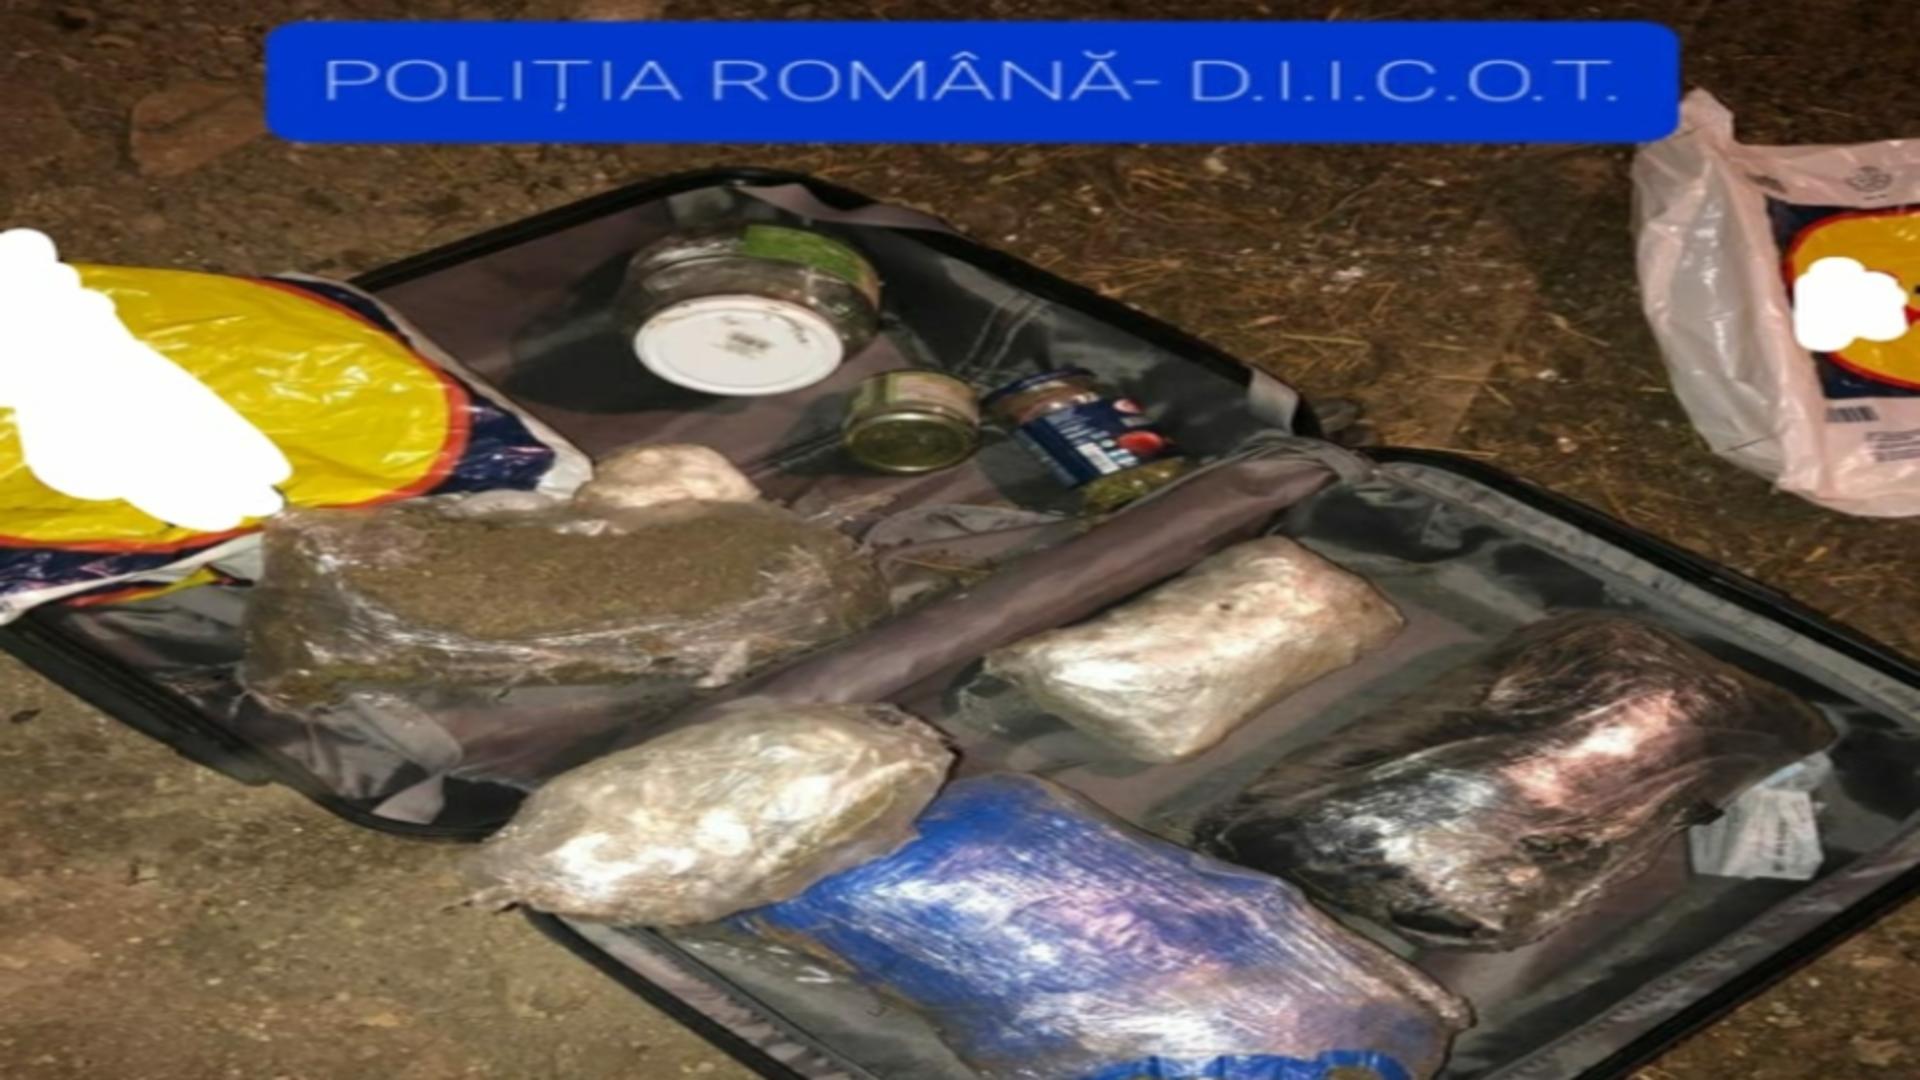 Pachetele suspecte descoperite in bagaje (sursă: Poliția Română)